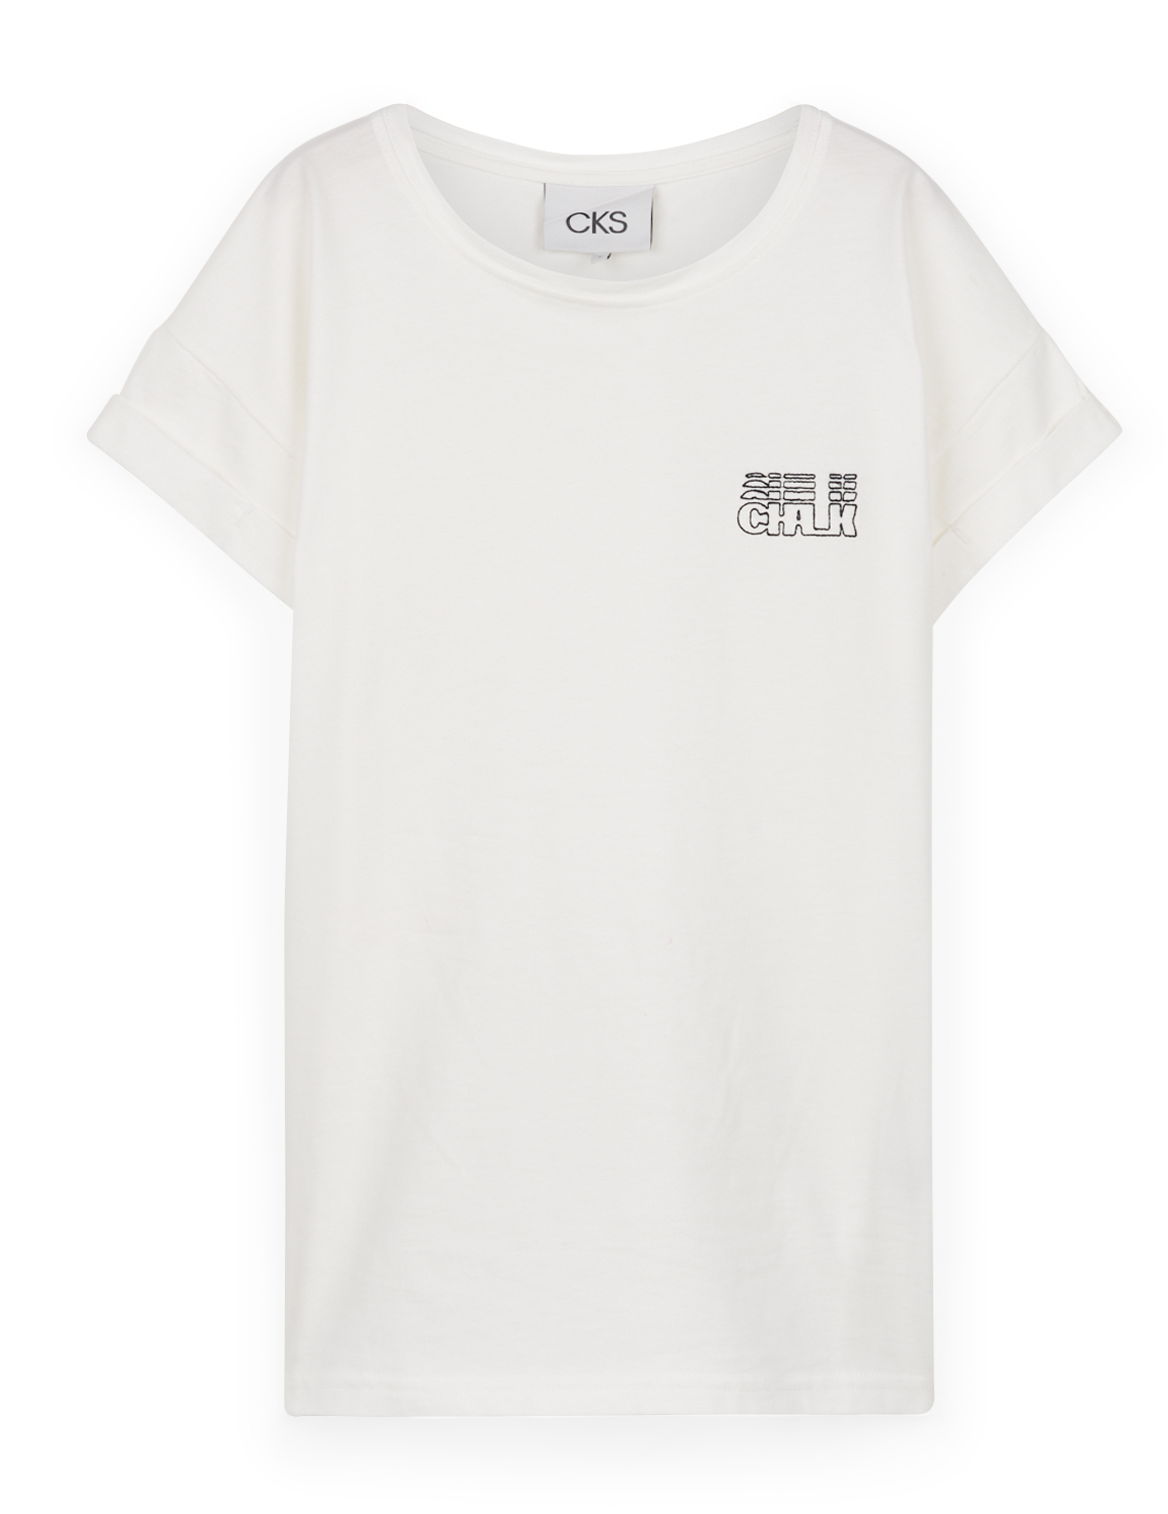 T-shirt, CKS, €36,99